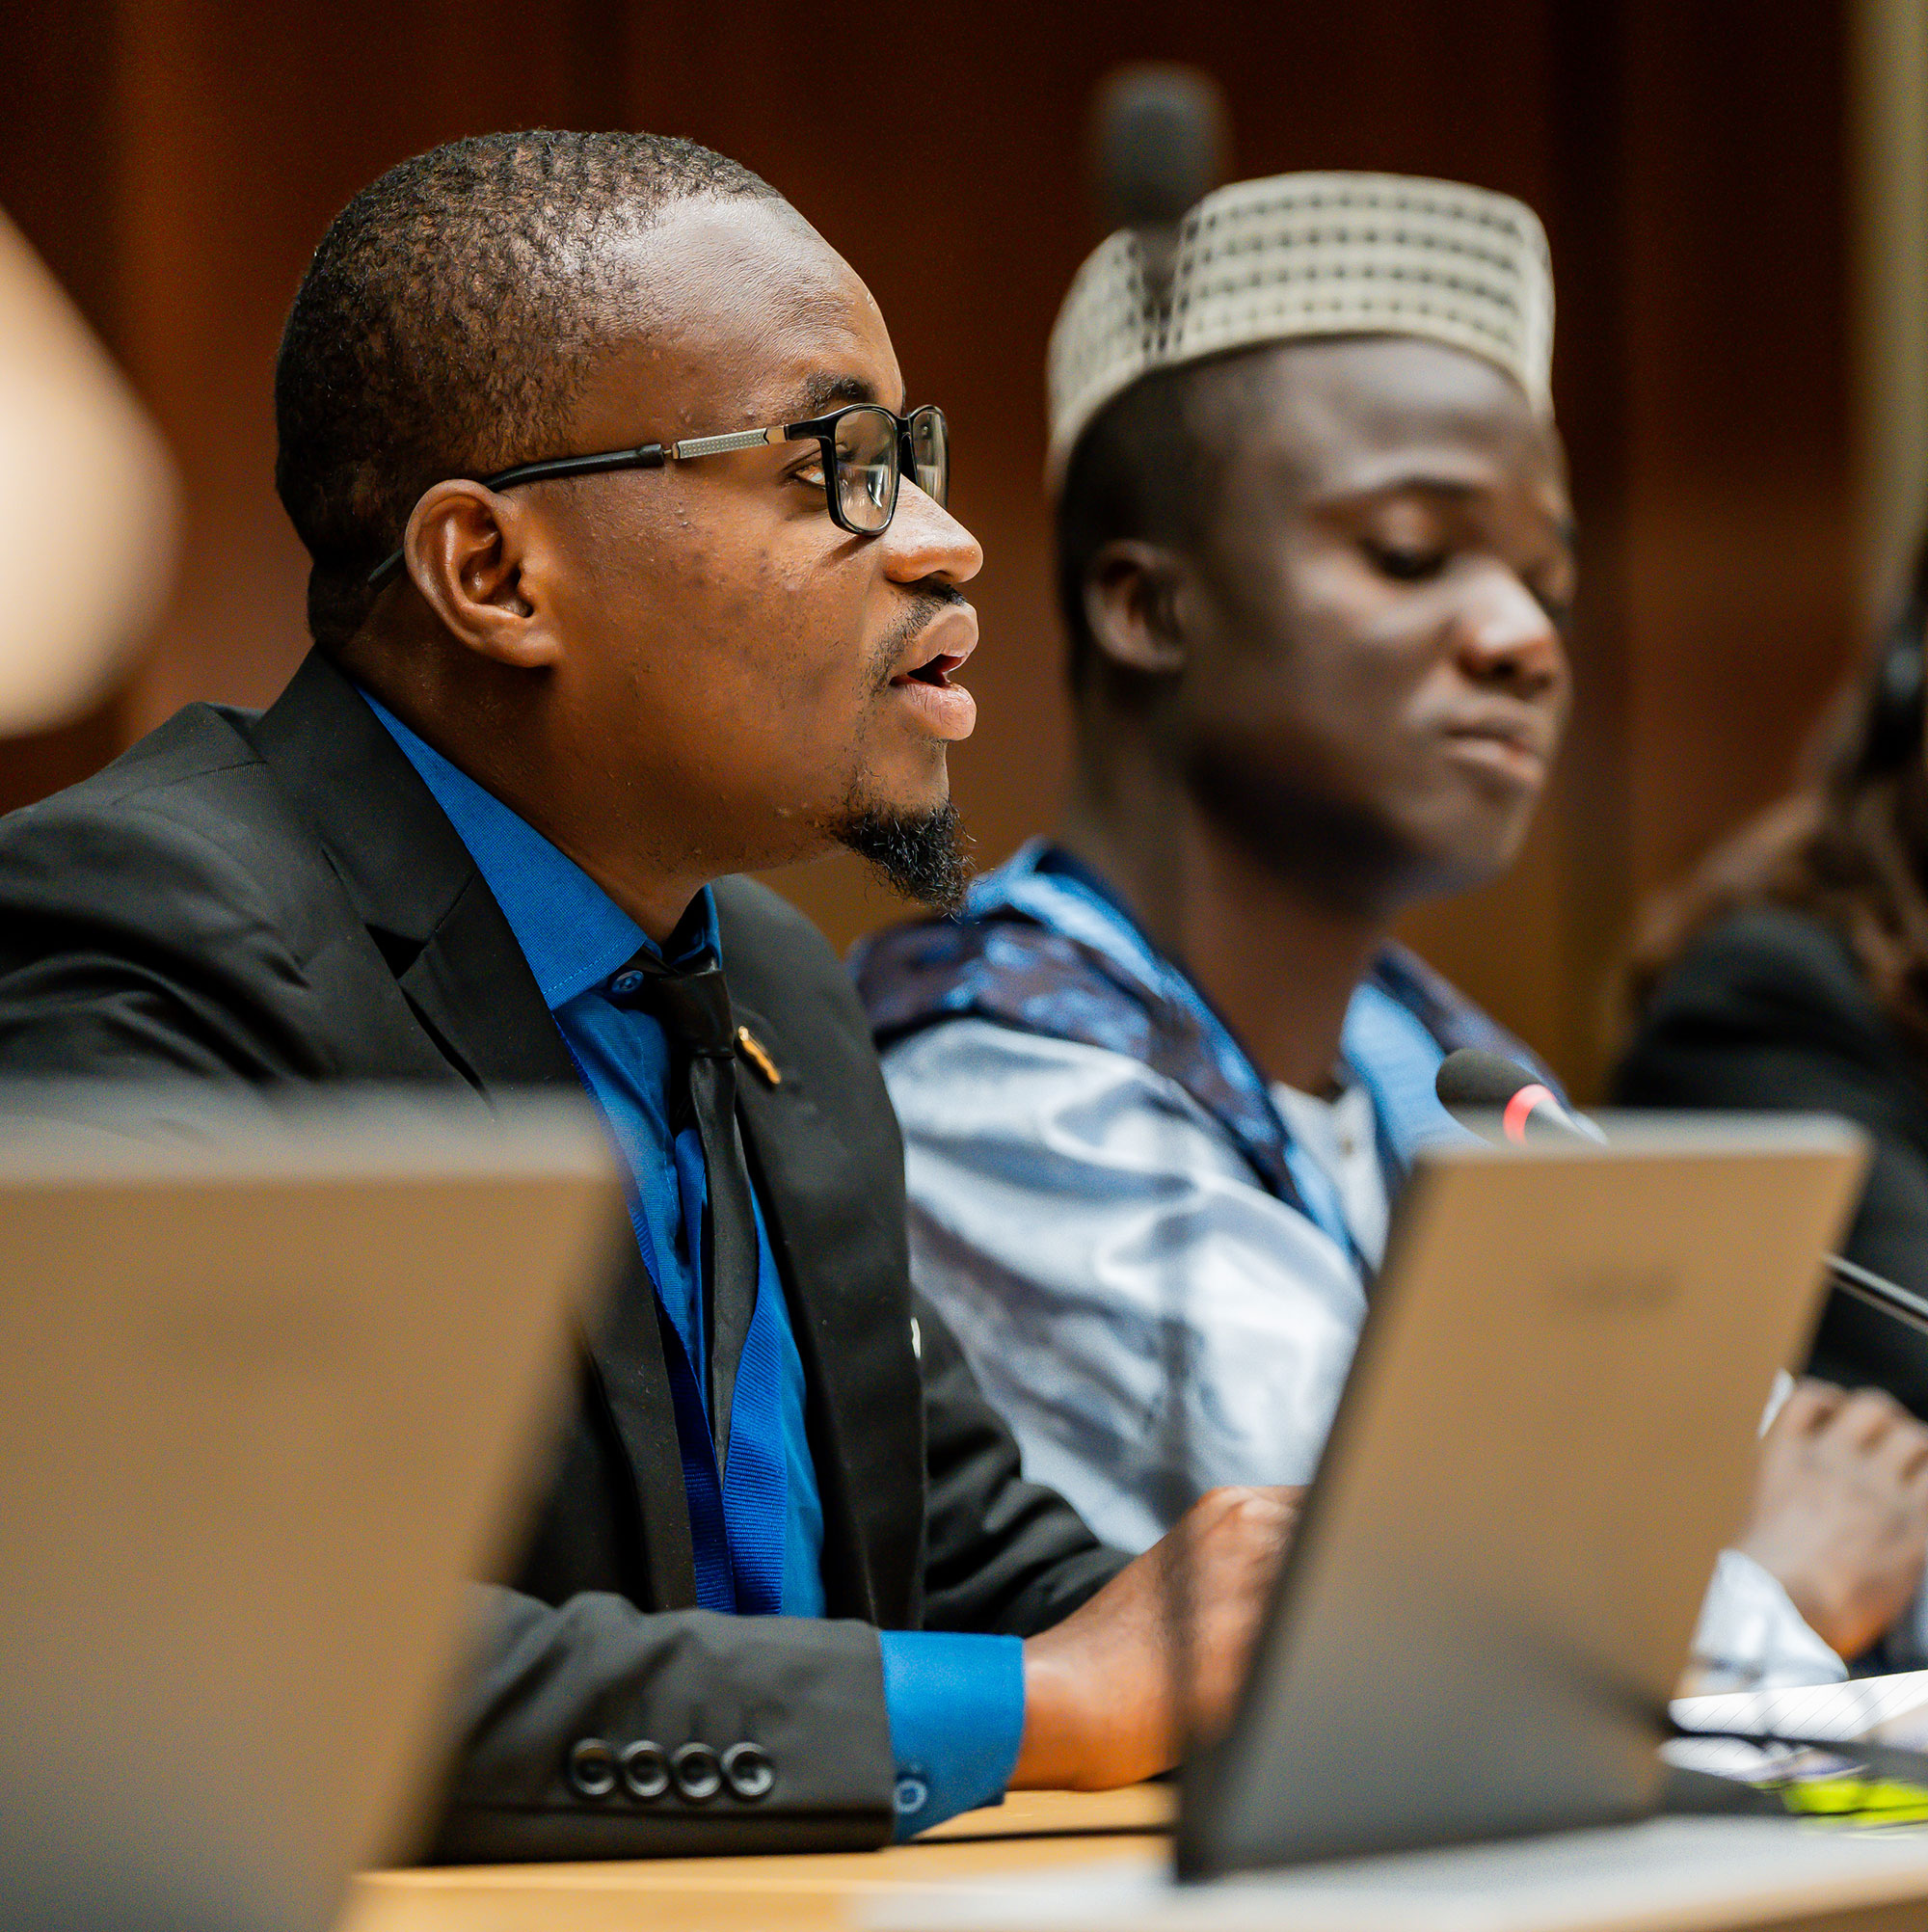 Un journaliste de Studio Kalangou, le média de la Fondation Hirondelle au Niger, au Forum UE-ONG sur les droits humains. © Daphne Matthys